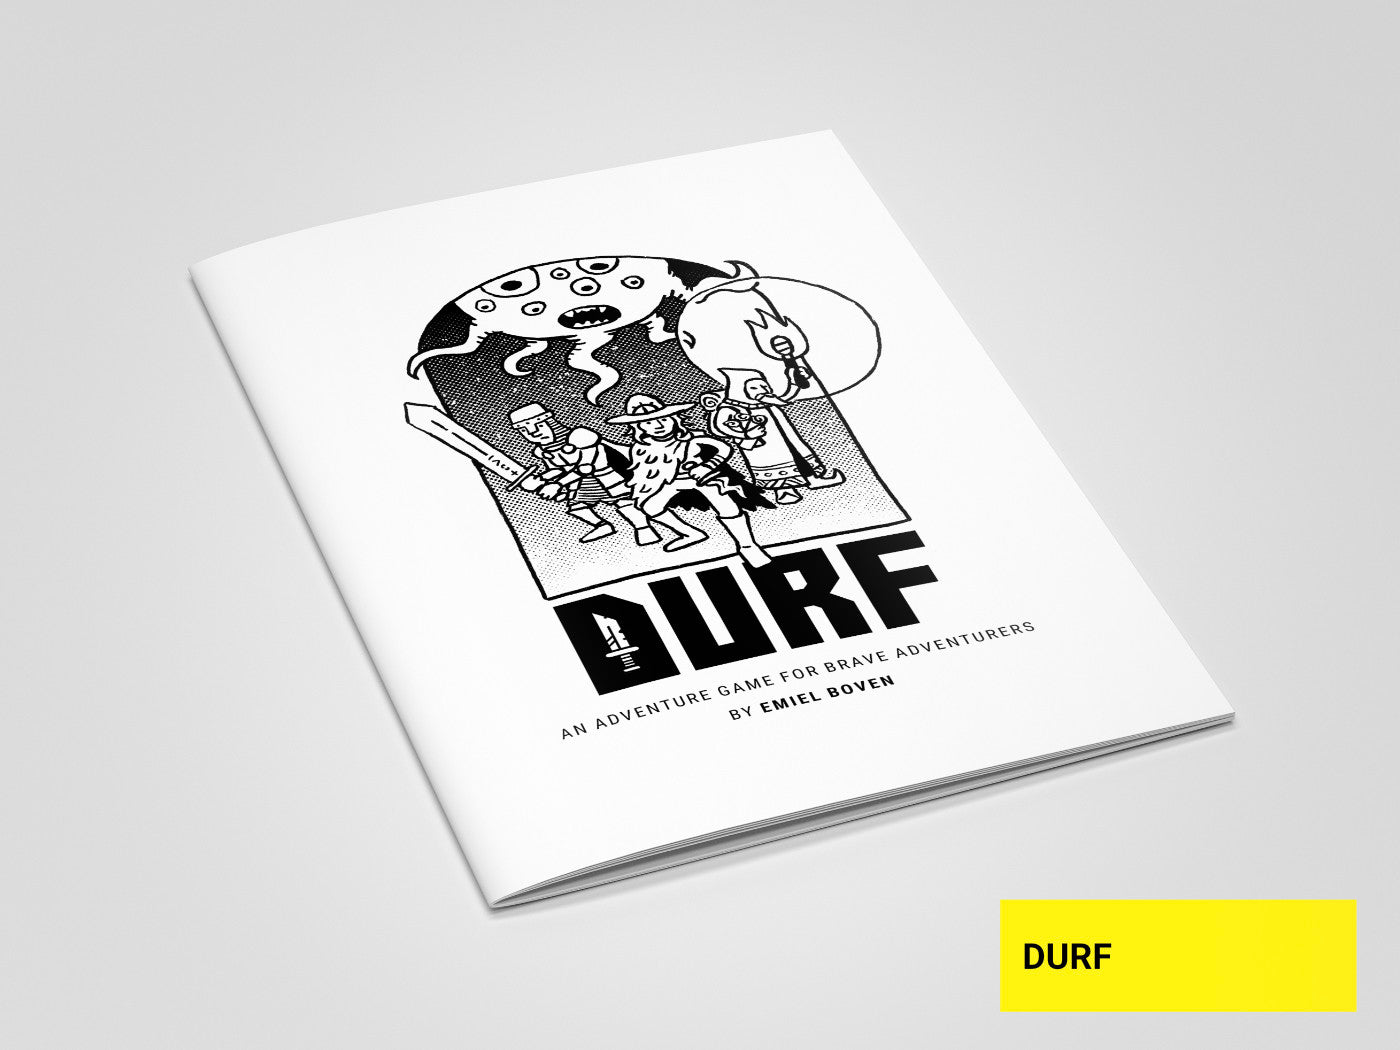 DURF lightweight RPG by Emiel Boven